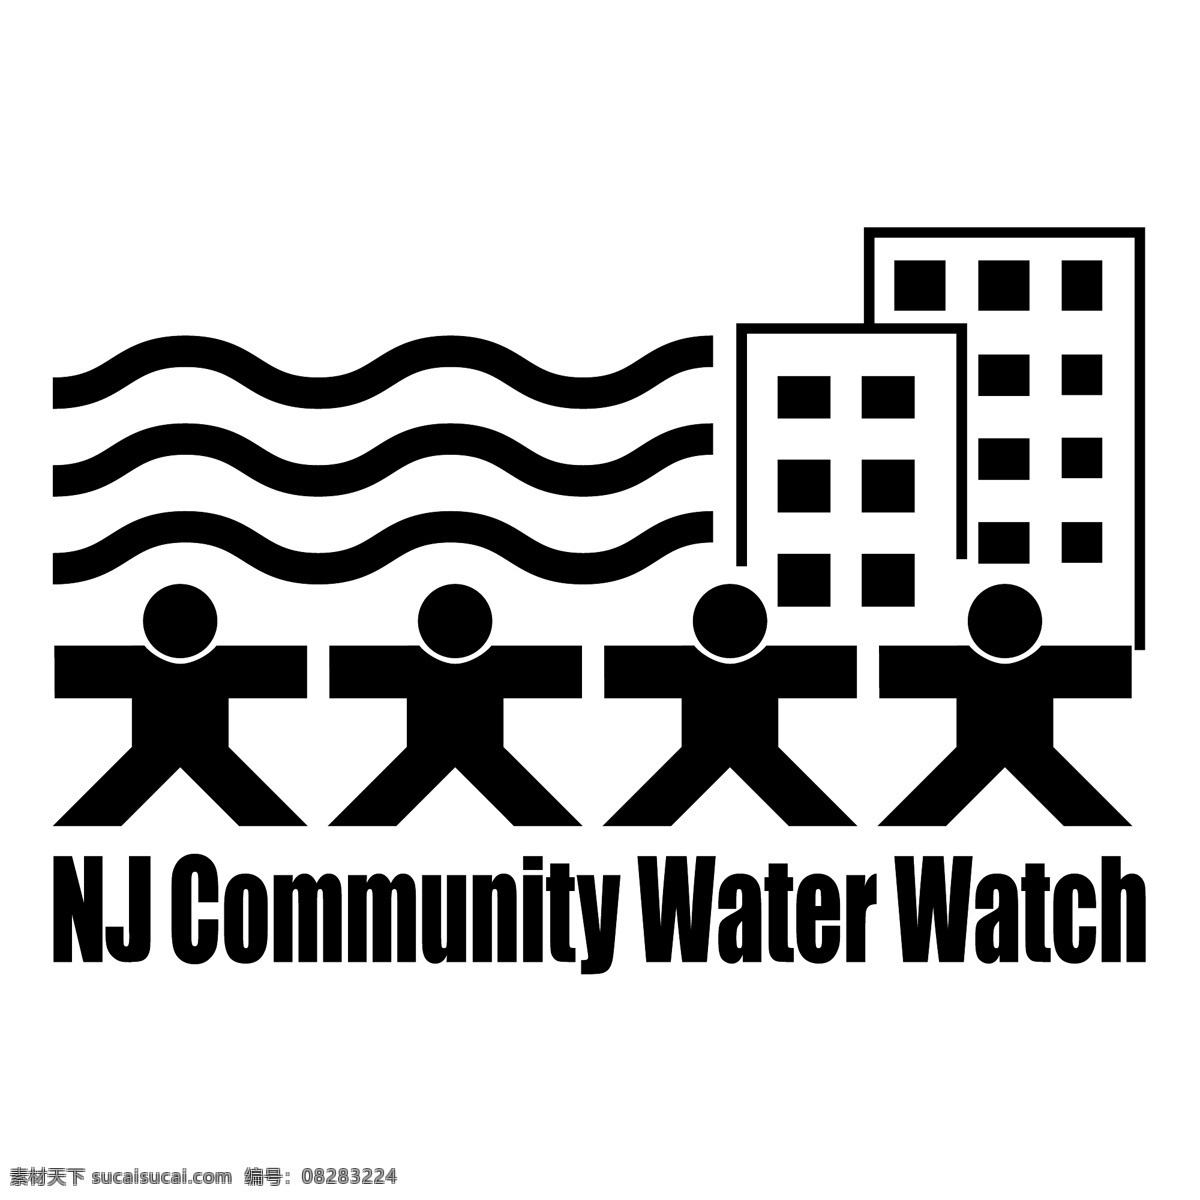 新泽西州 社区 水 看 免费 标志 新泽西 psd源文件 logo设计